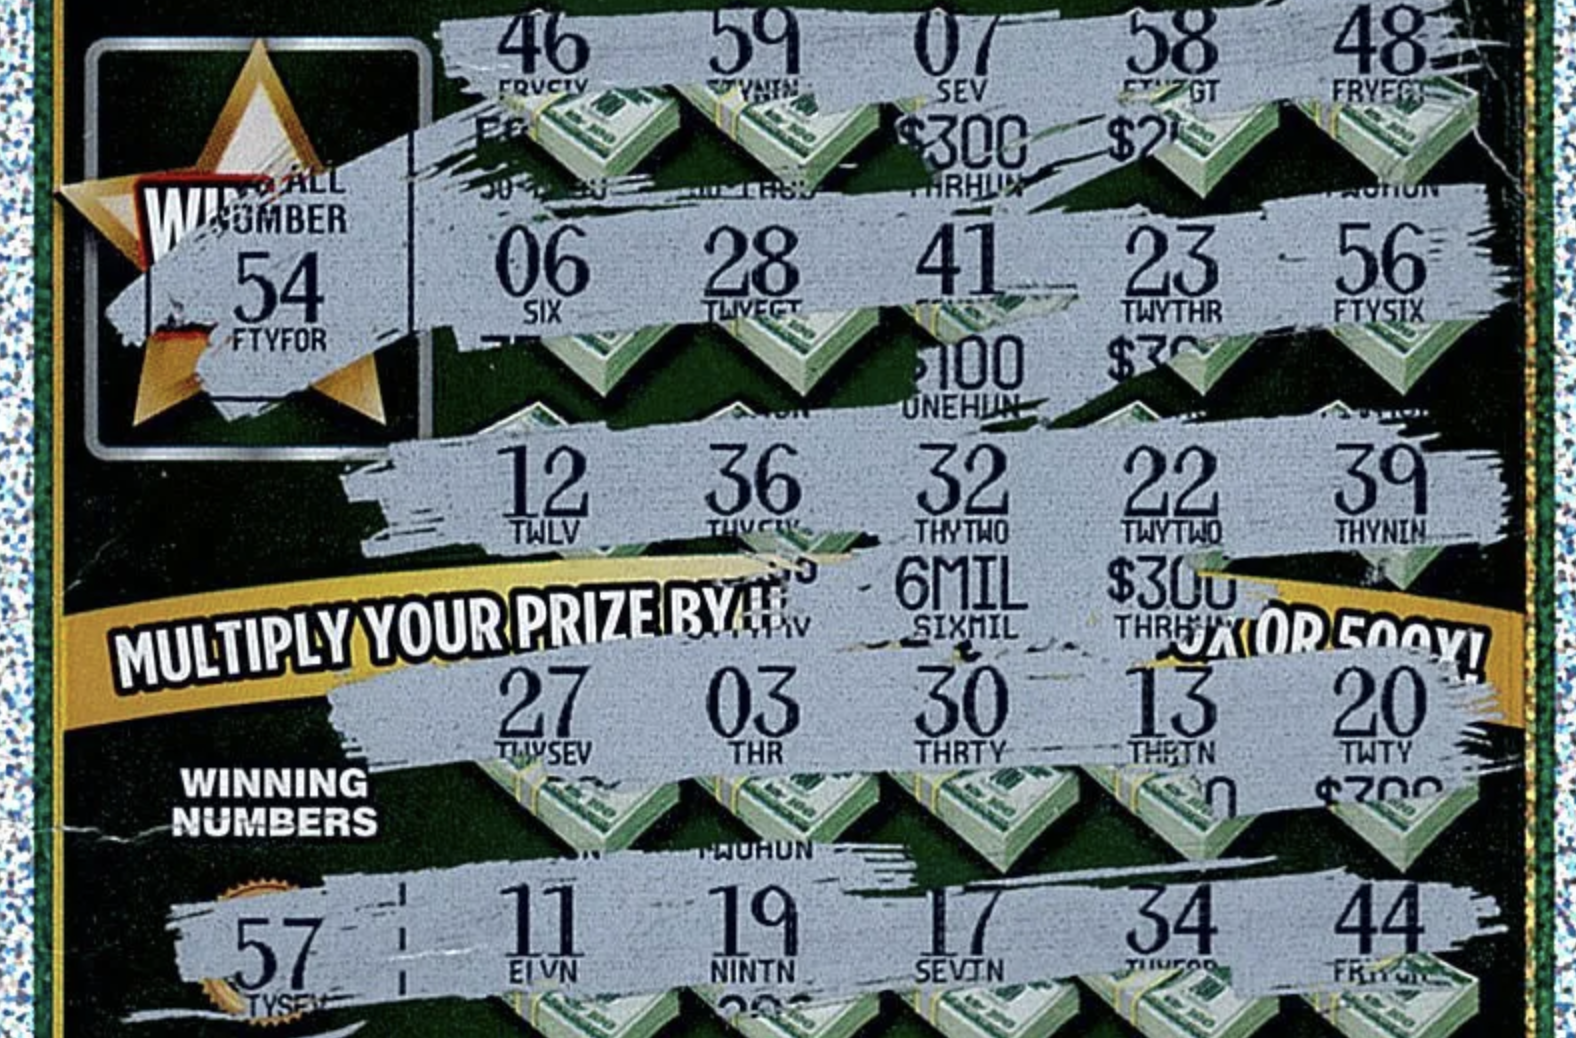 Michigan Lottery Club Vinst på $6 miljoner för att radera bolån